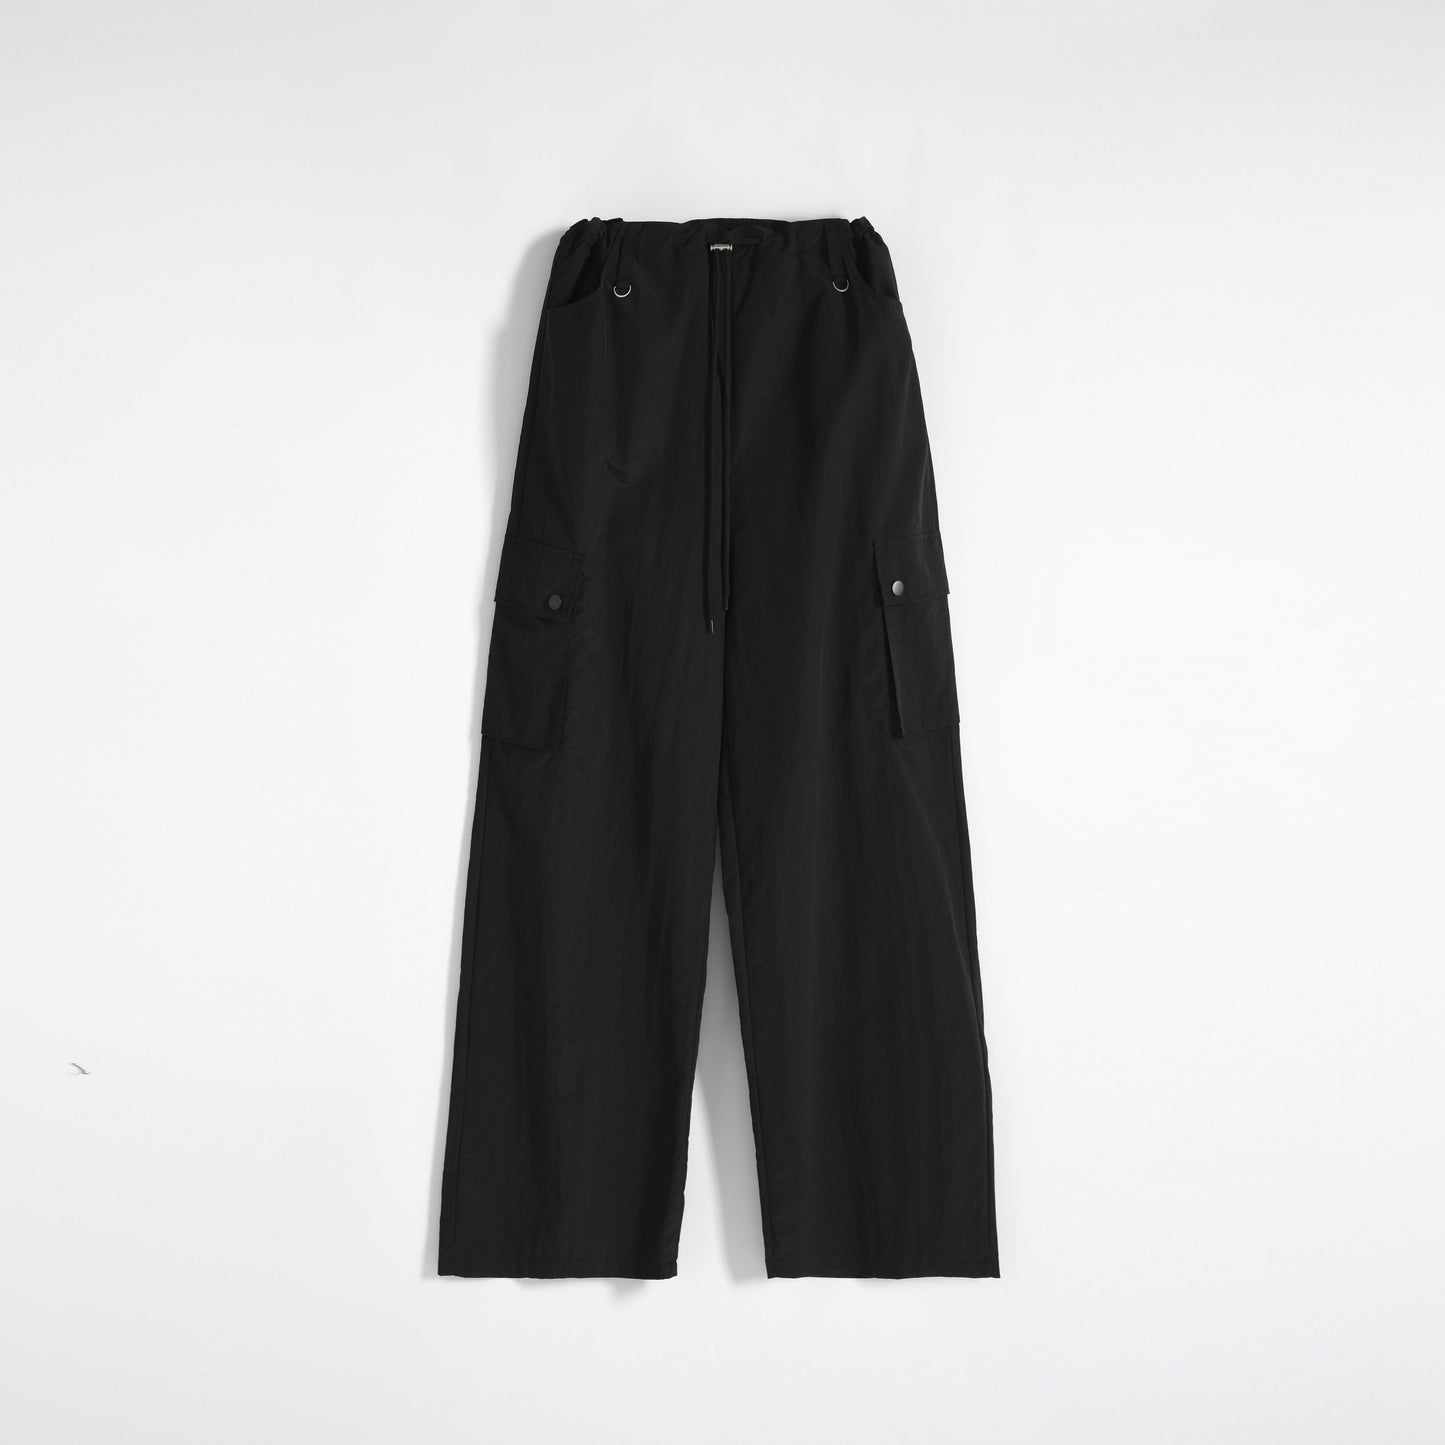 Pantalones anchos informales de estilo callejero con cintura ajustable y cordón deportivo.